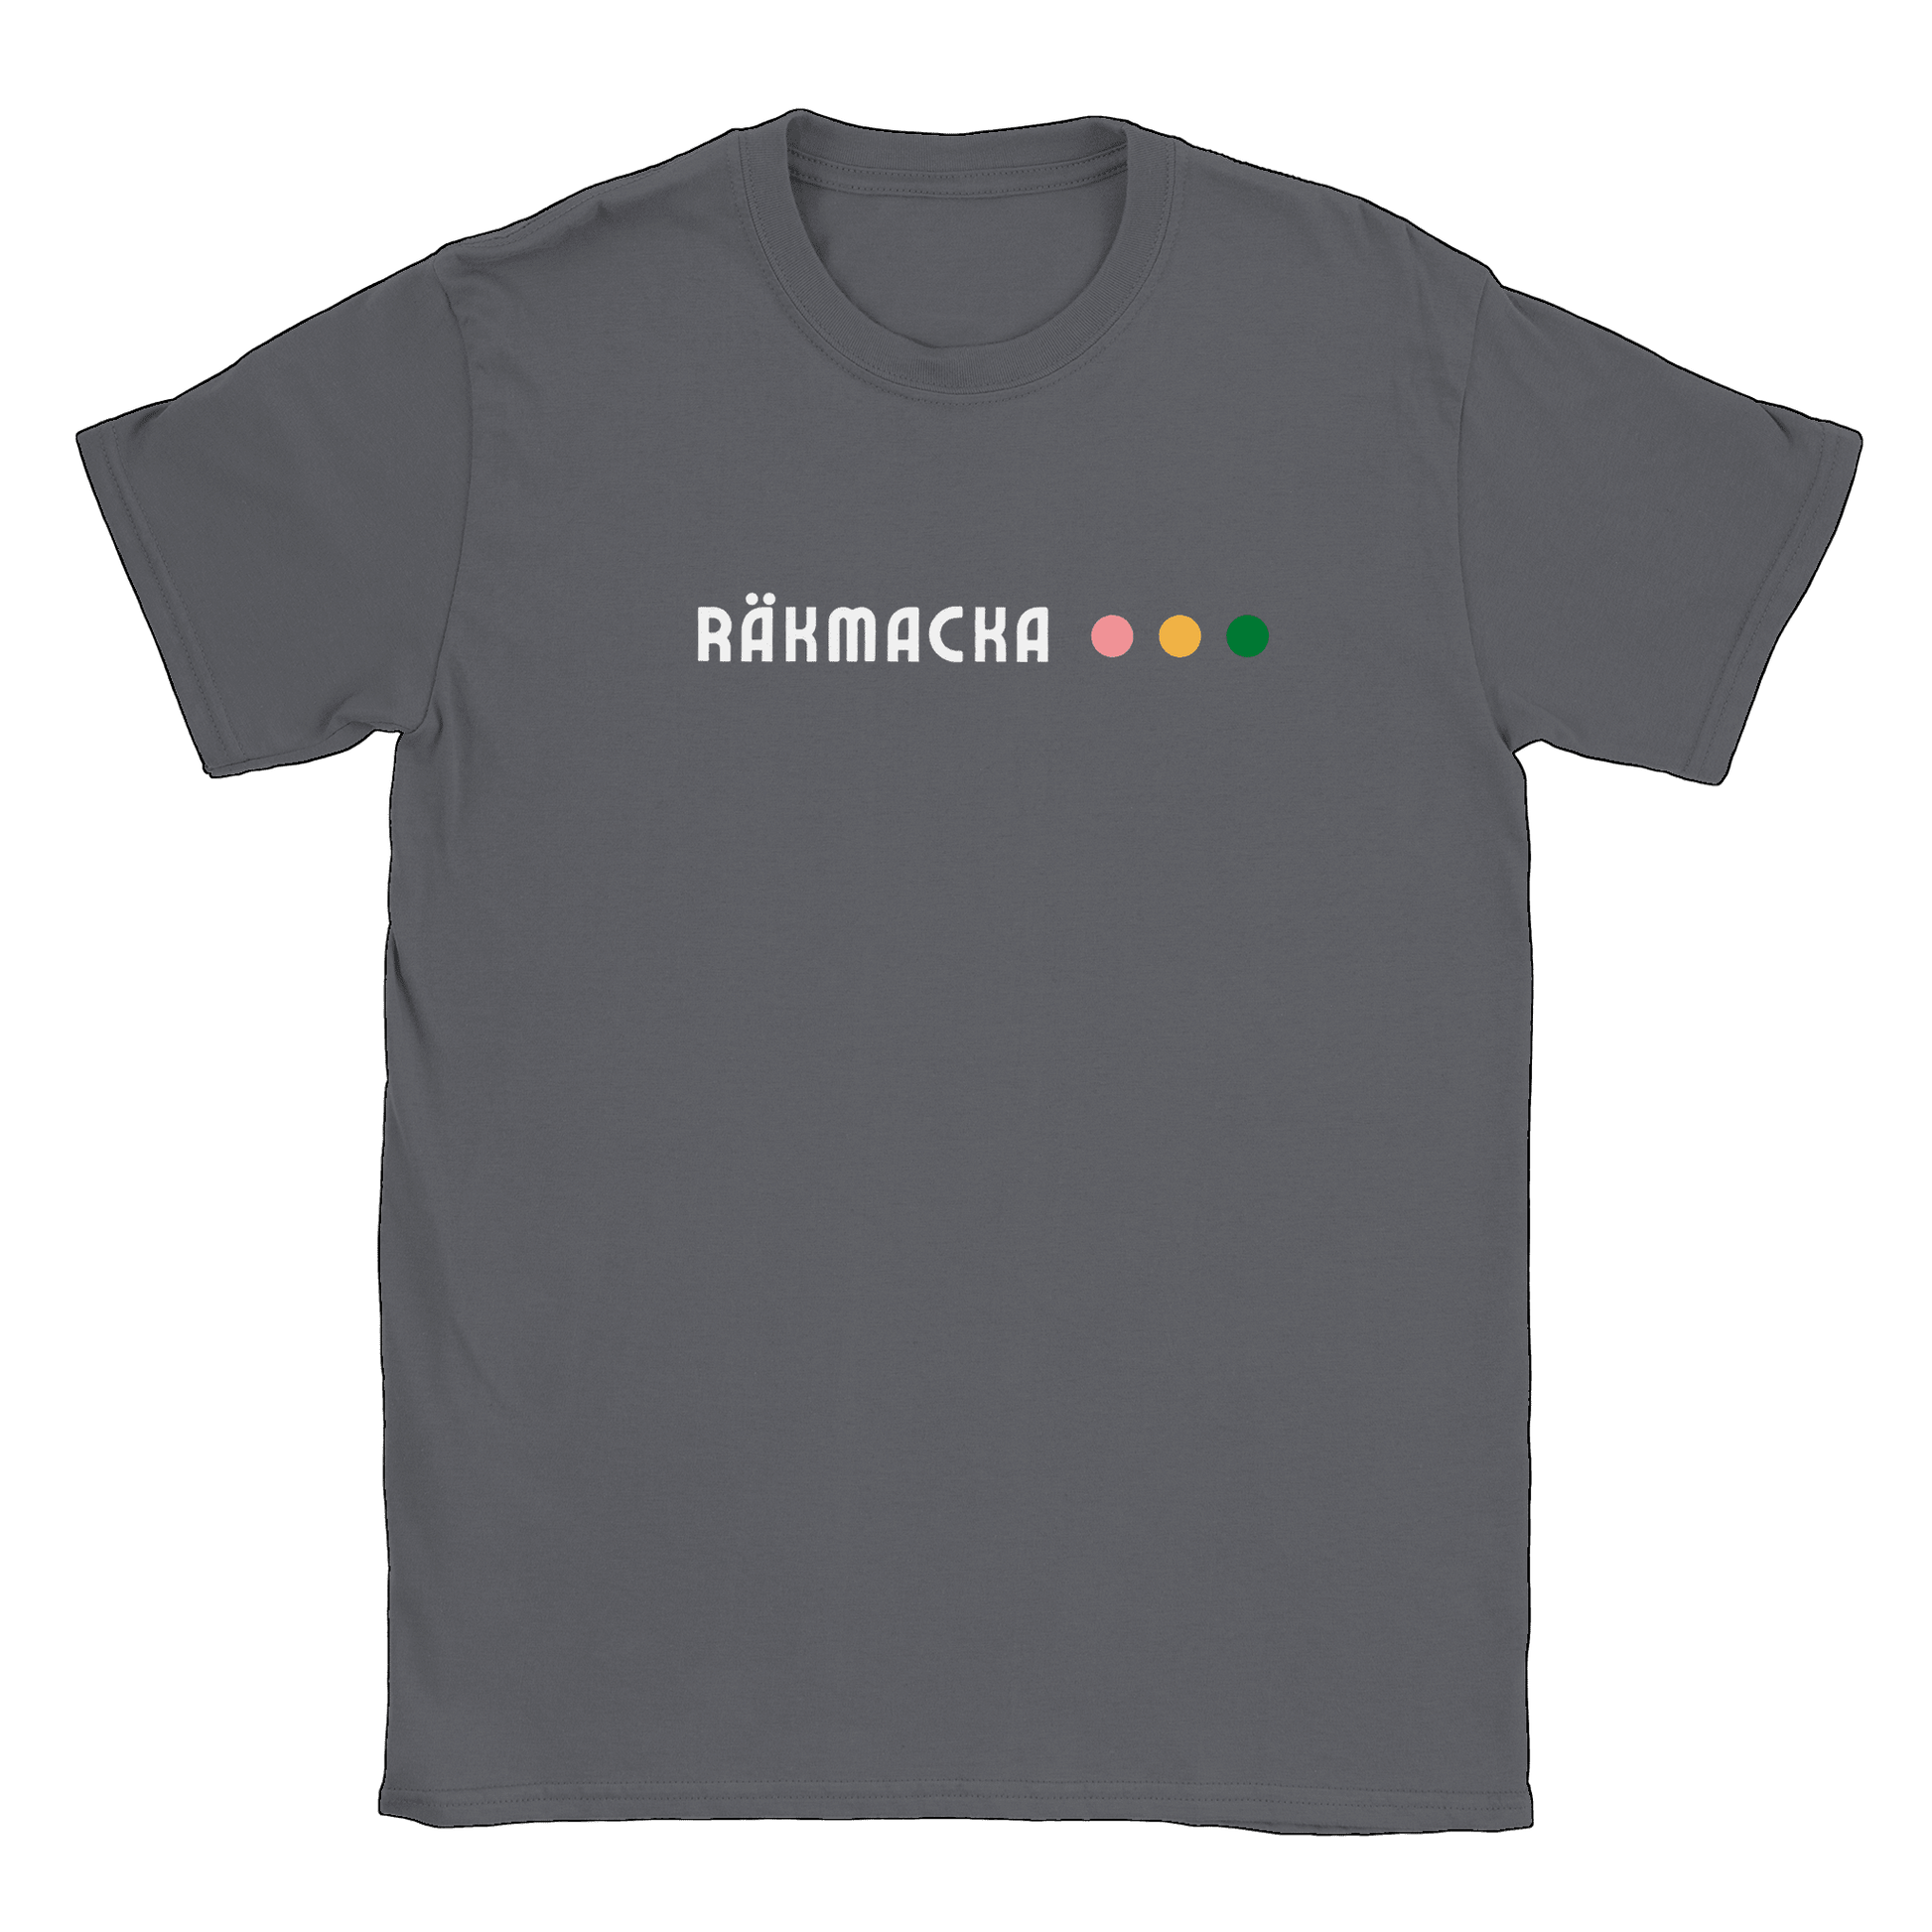 Räkmacka - T-shirt Kolgrå